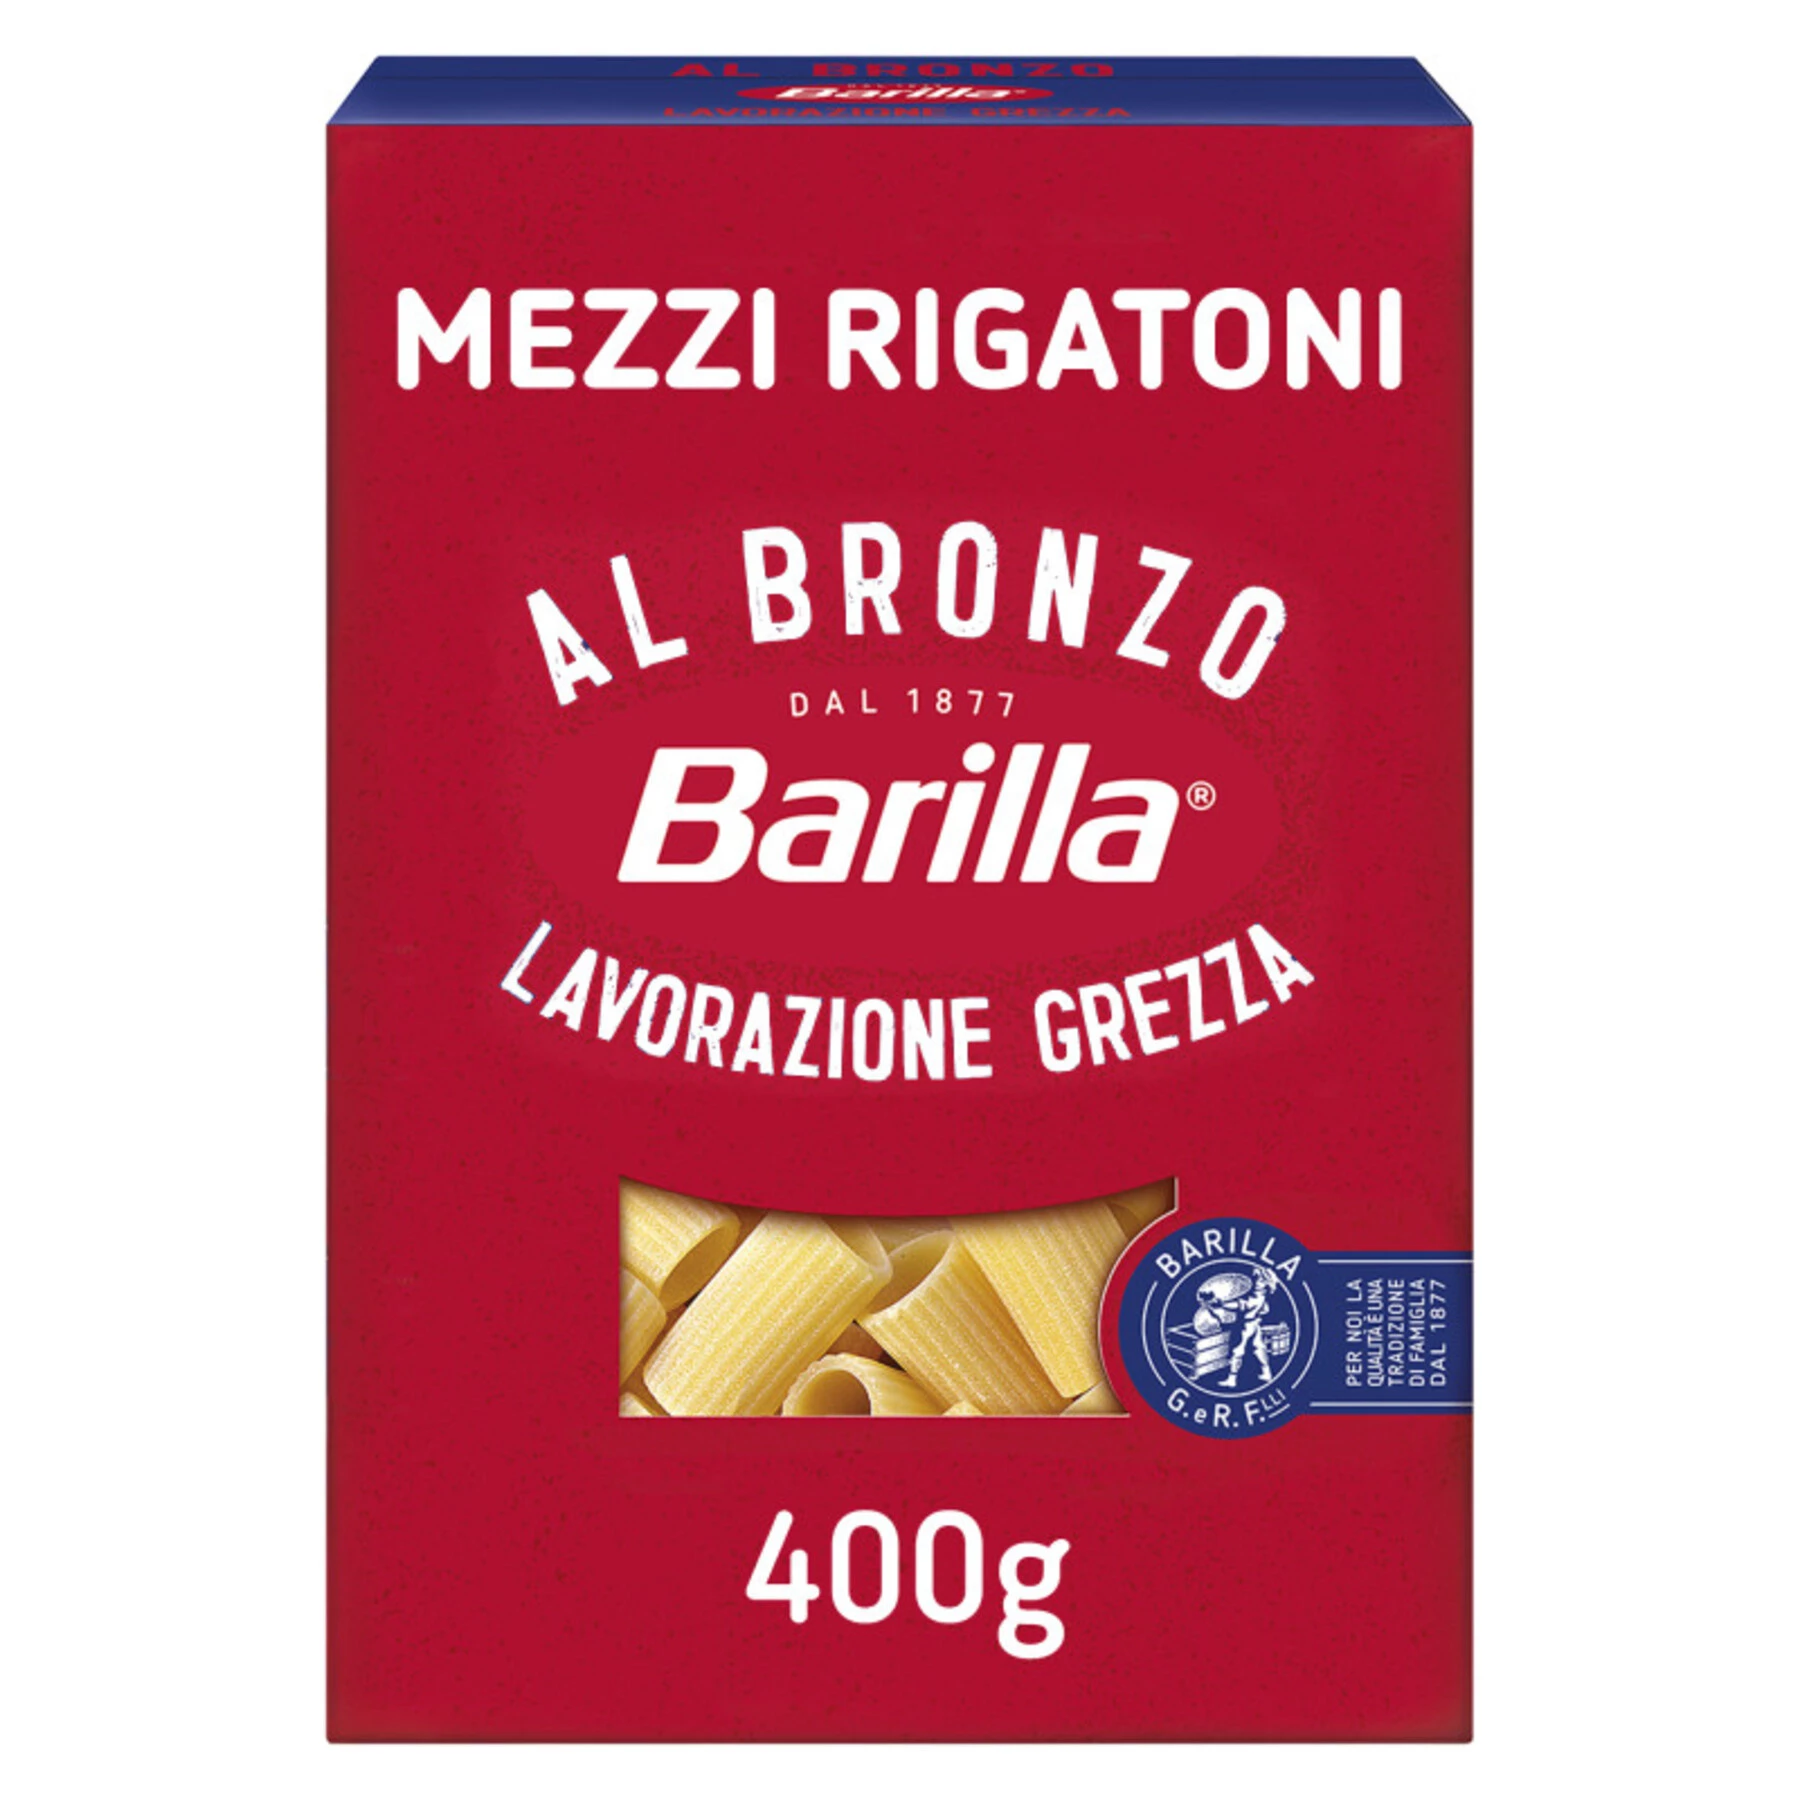 Patês Mezzi Rigatoni Bronze, 400g - BARILLA